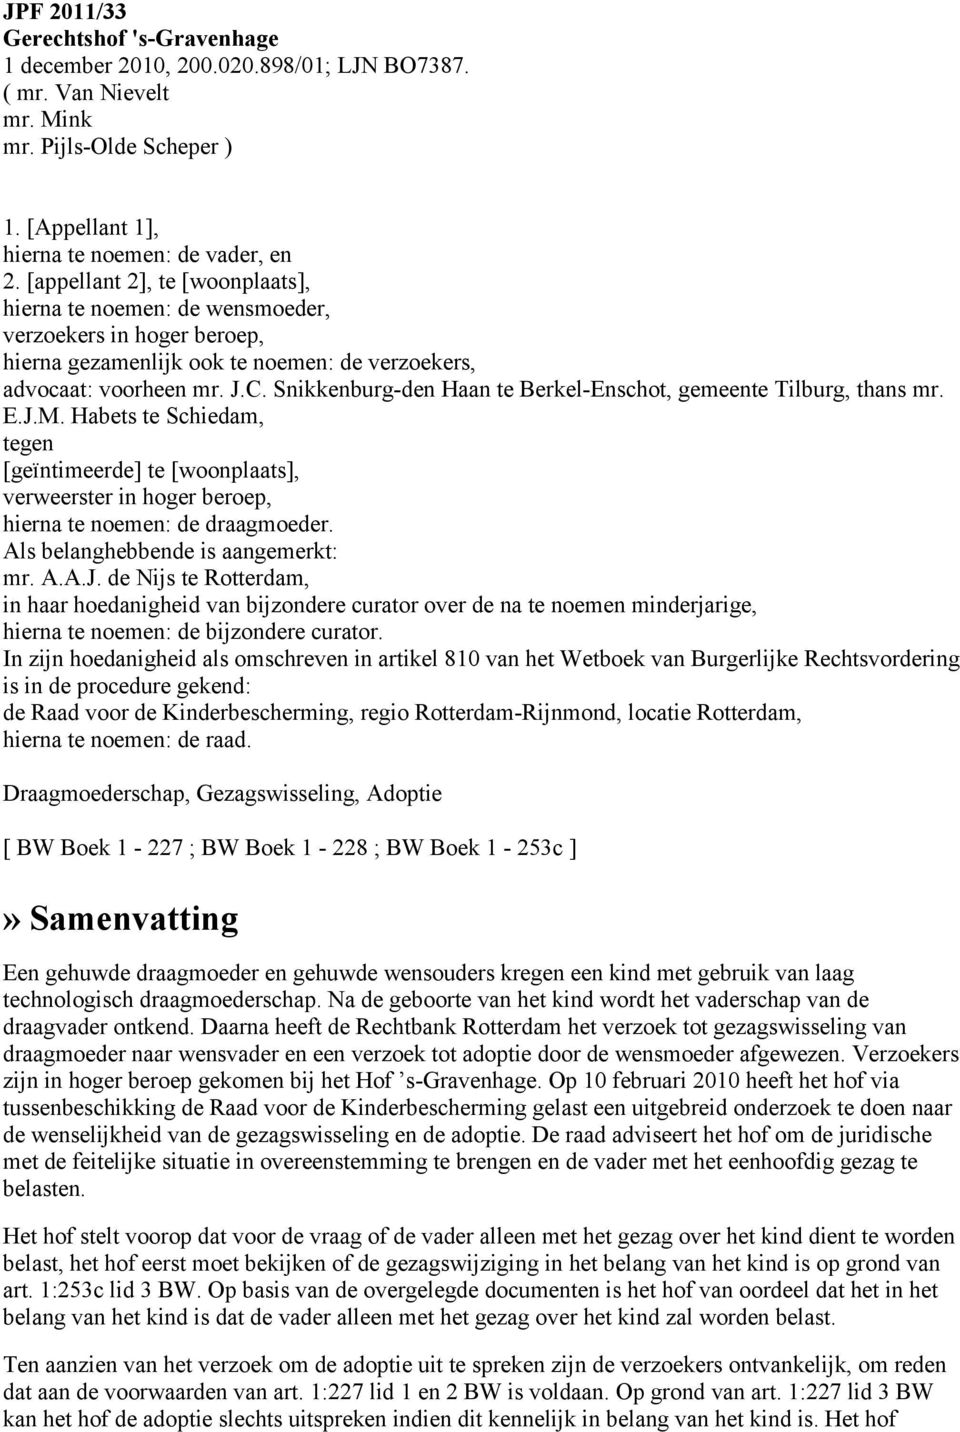 Snikkenburg-den Haan te Berkel-Enschot, gemeente Tilburg, thans mr. E.J.M. Habets te Schiedam, tegen [geïntimeerde] te [woonplaats], verweerster in hoger beroep, hierna te noemen: de draagmoeder.